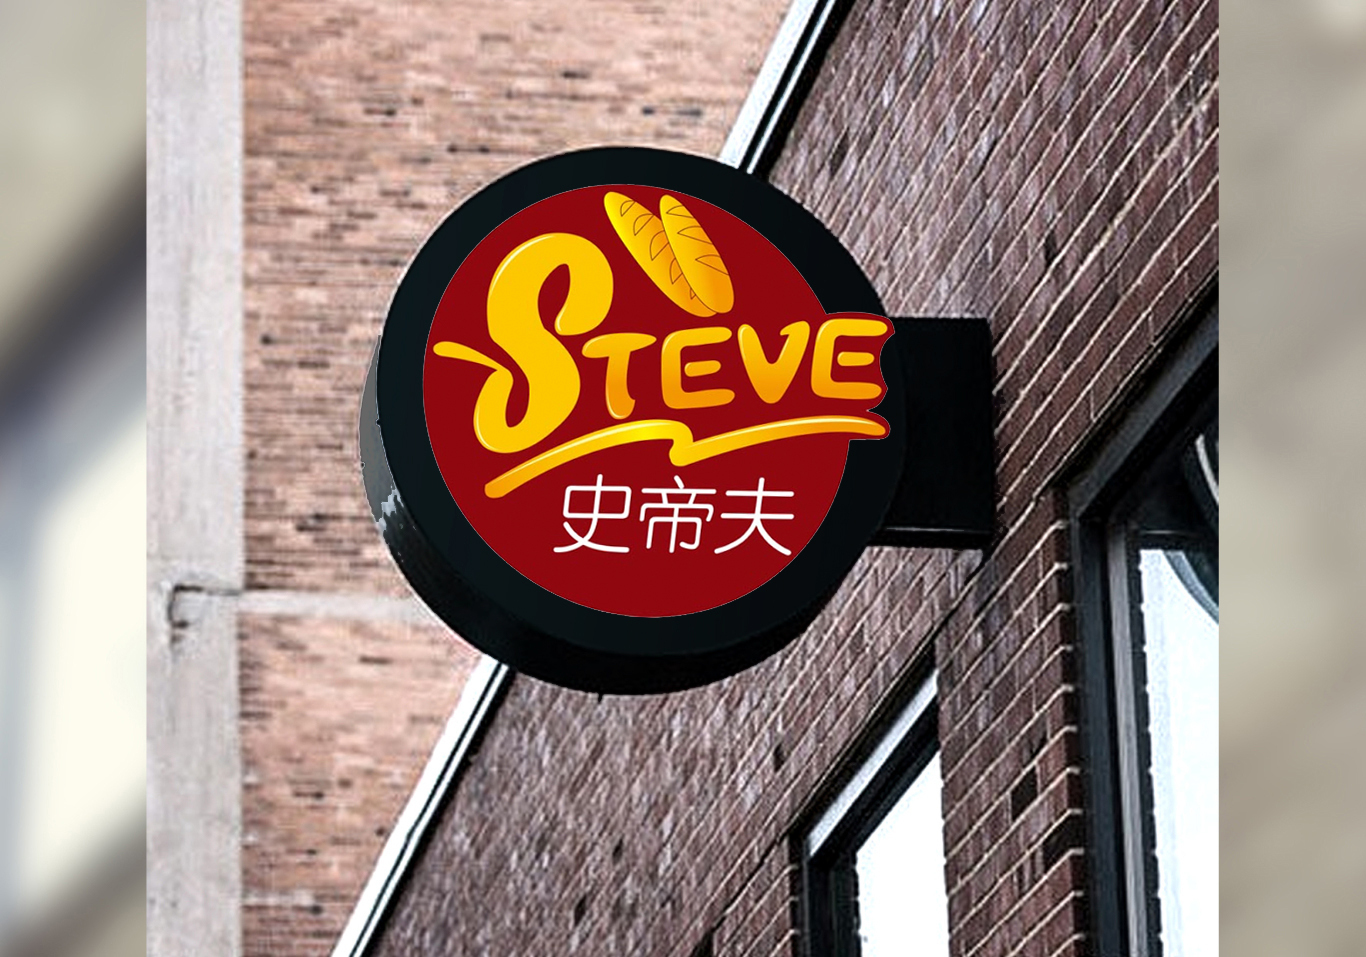 史蒂夫 意大利风情餐厅logo设计图3